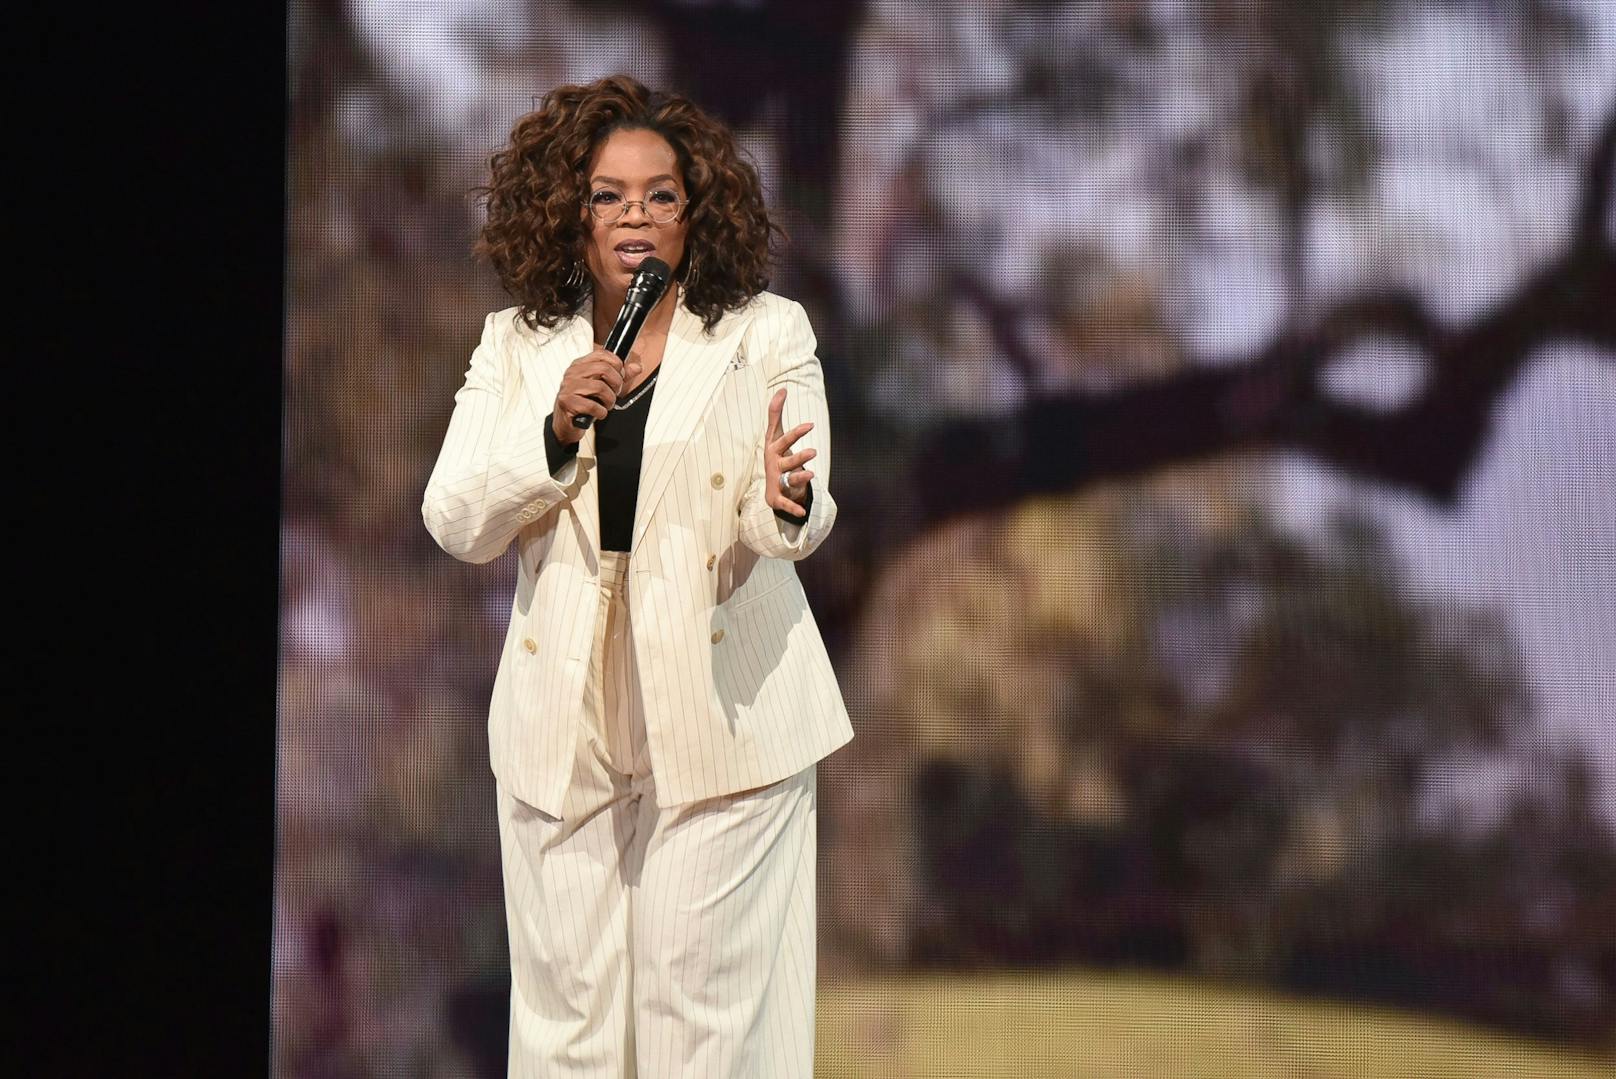 Talkmasterin Oprah Winfrey erklärte schon im Vorfeld: "Es wird keine Tabus geben". Und so war es dann auch... 